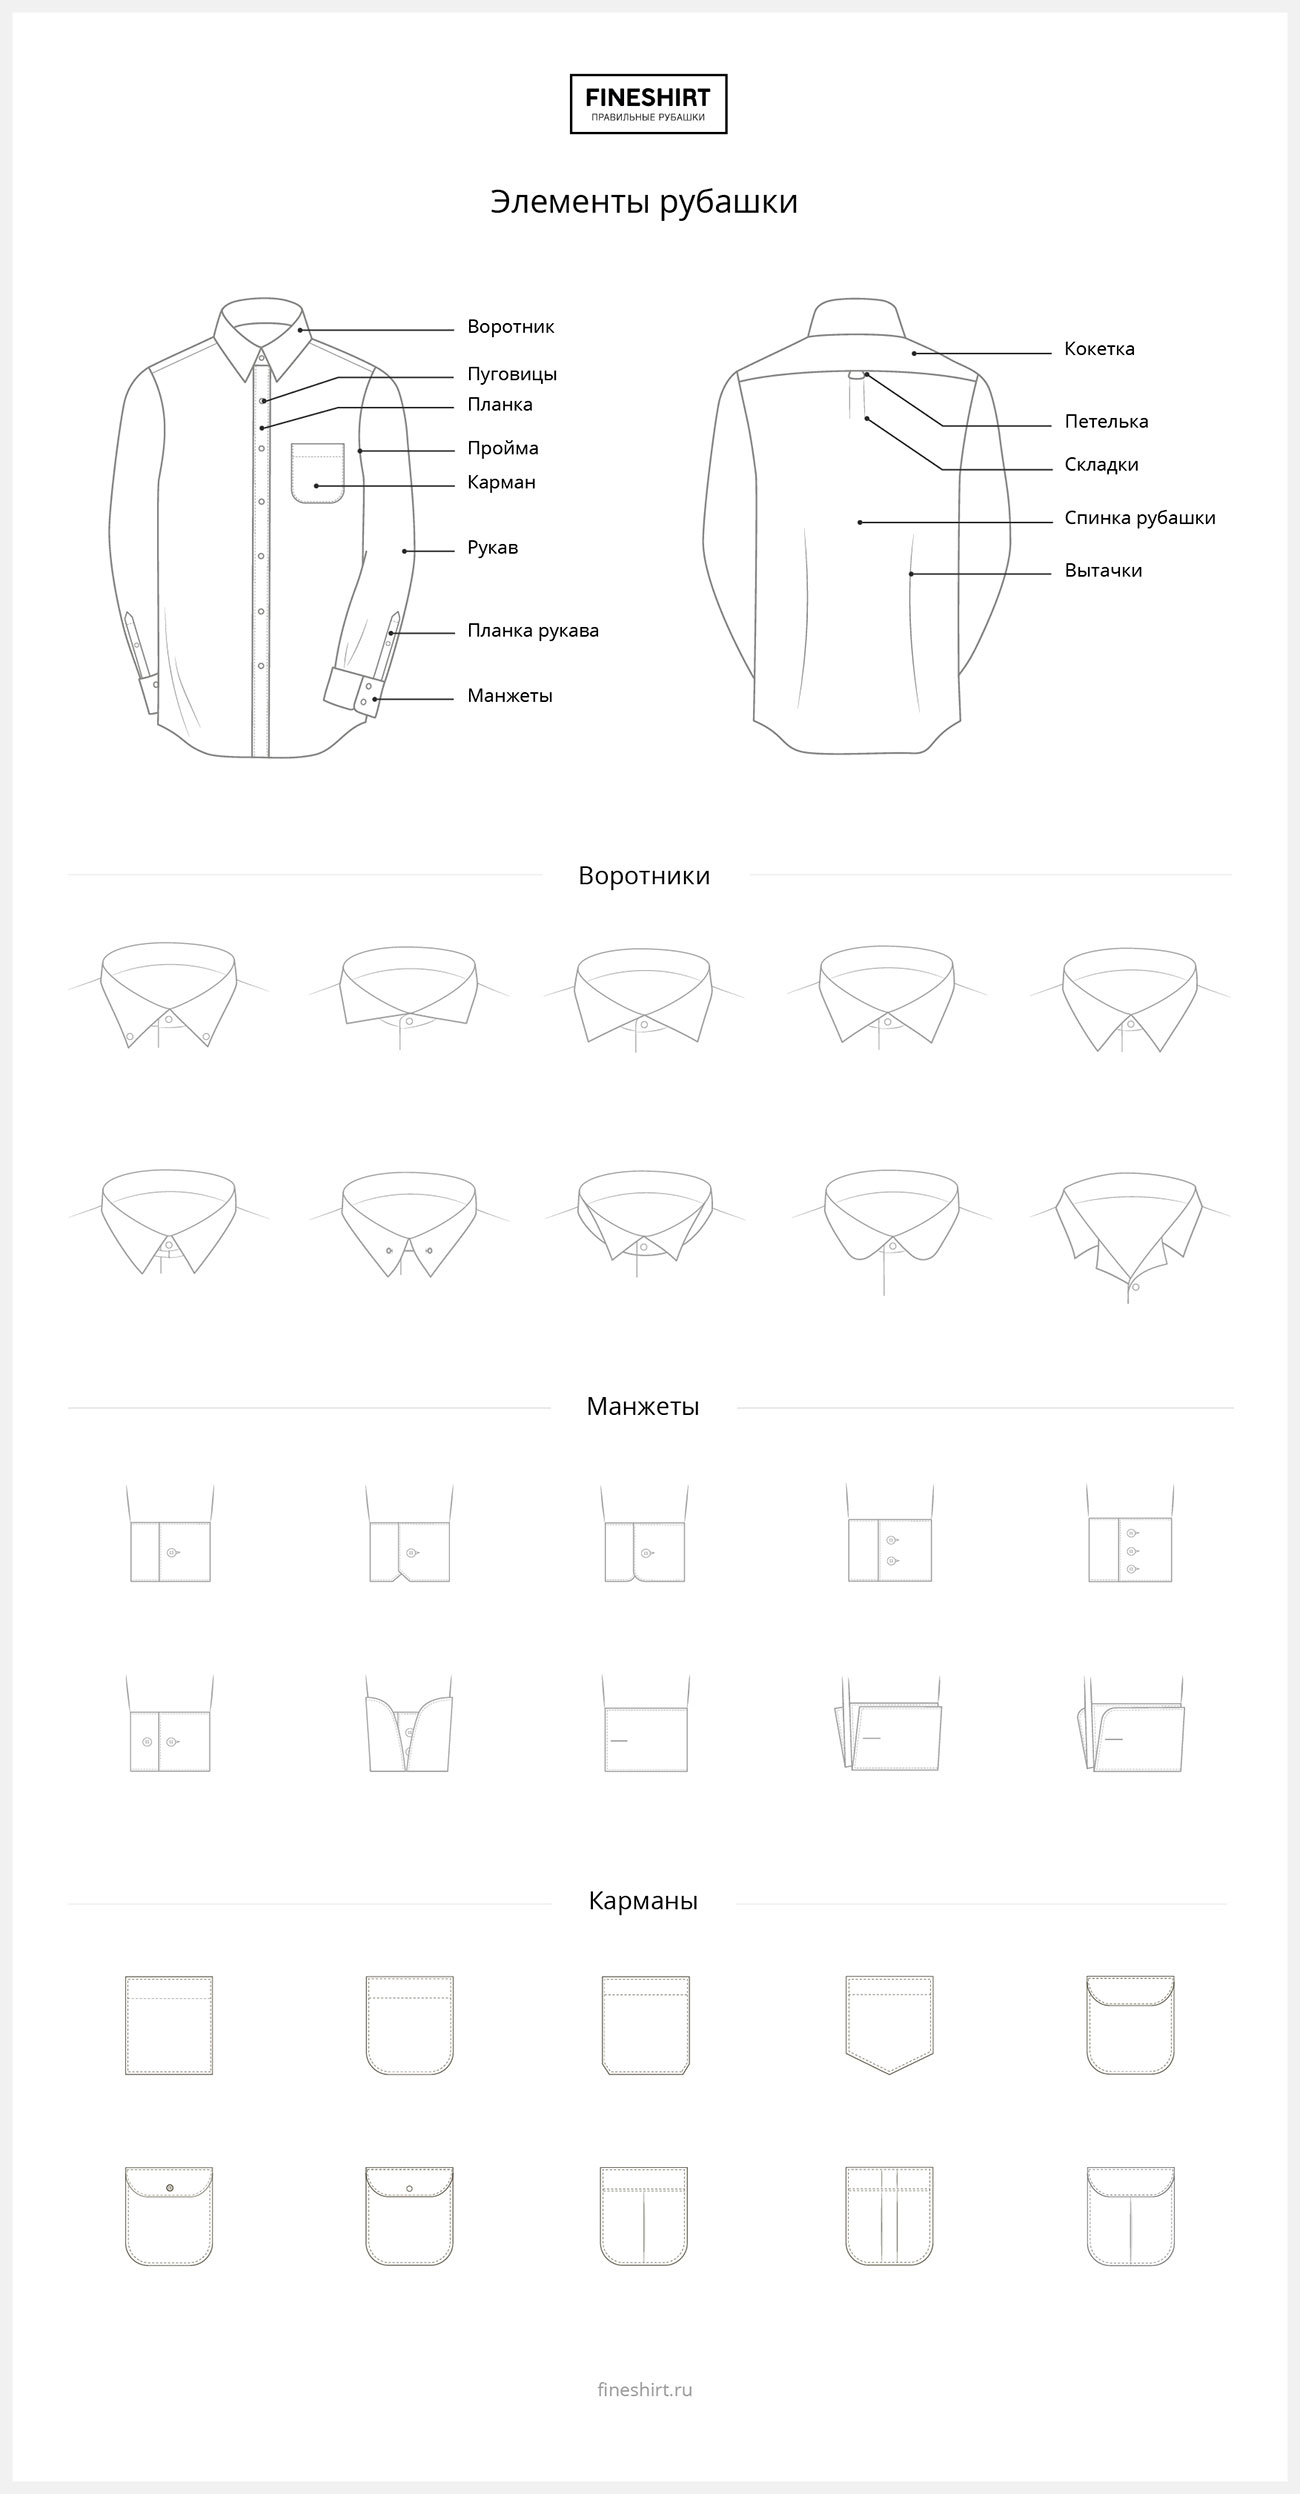 Иллюстрация элементов рубашки